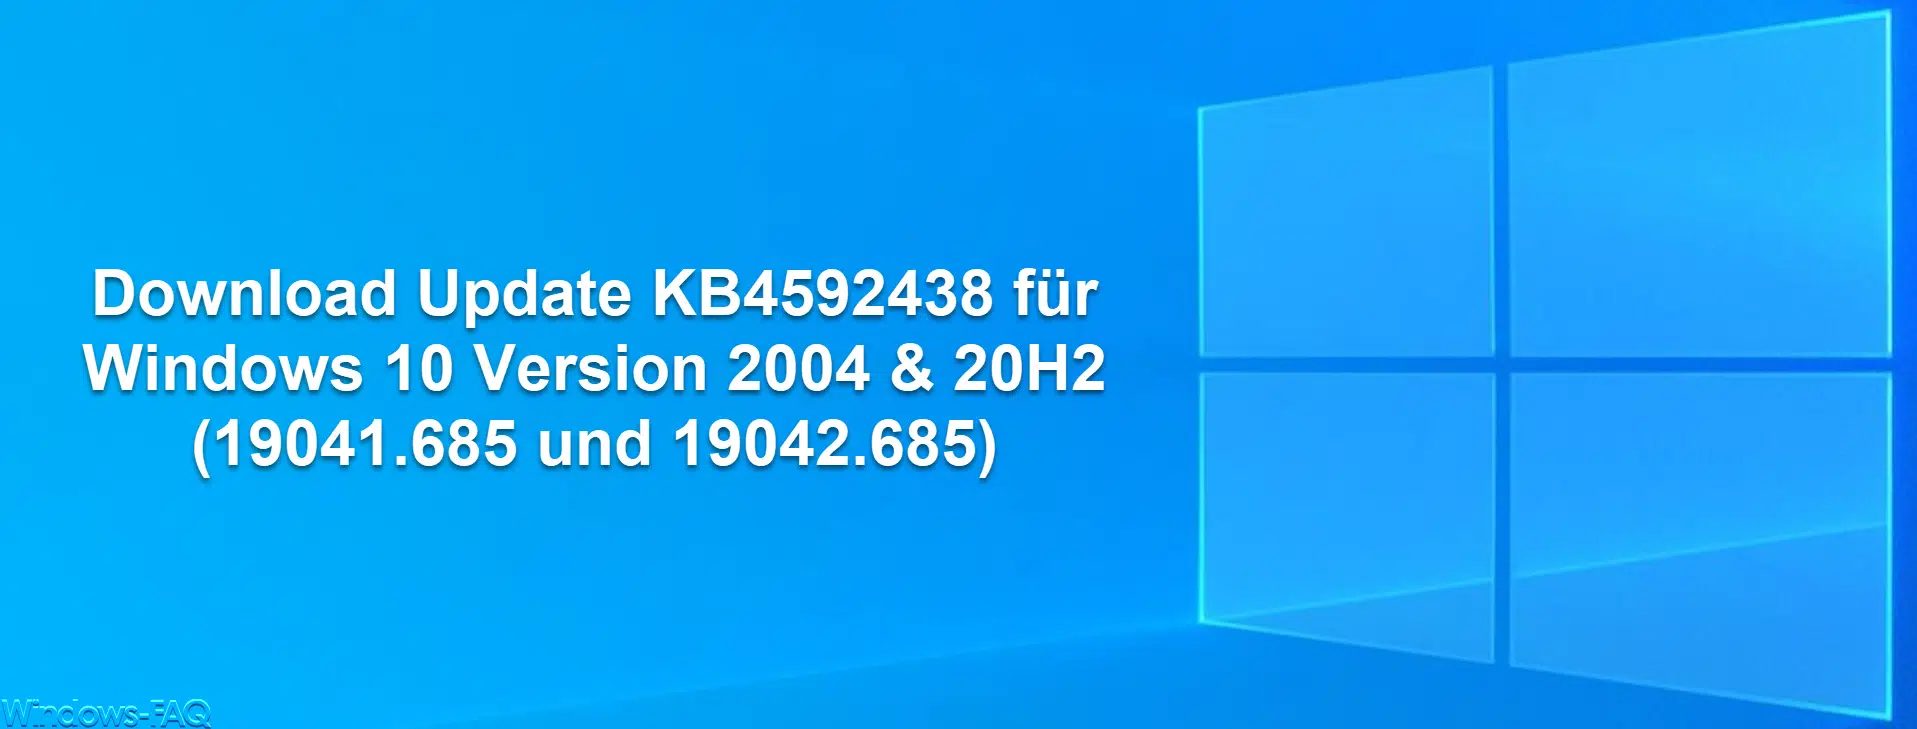 Download Update KB4592438 für Windows 10 Version 2004 & 20H2 (19041.685 und 19042.685)